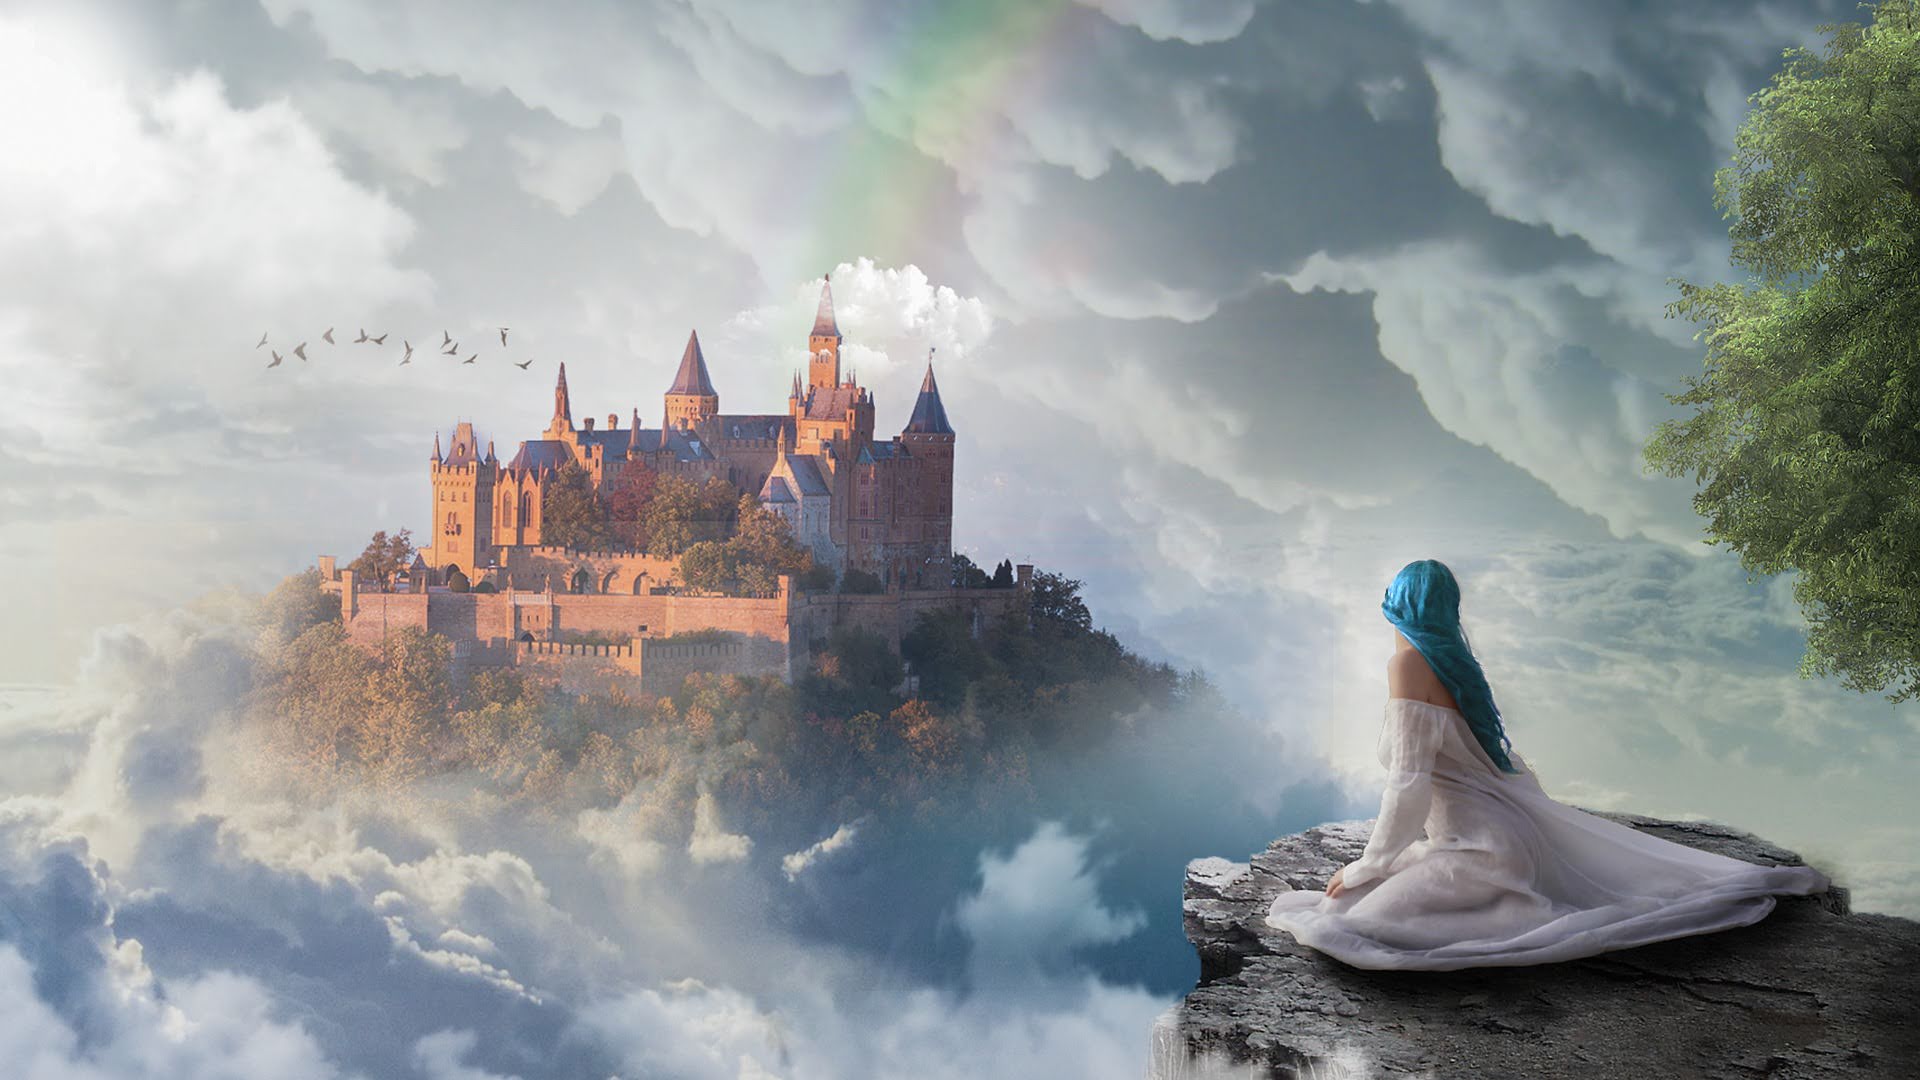 A imagem possui uma elfa com cabelos azuis em destaque, olhando mais ao fundo uma cidade nas nuvens.